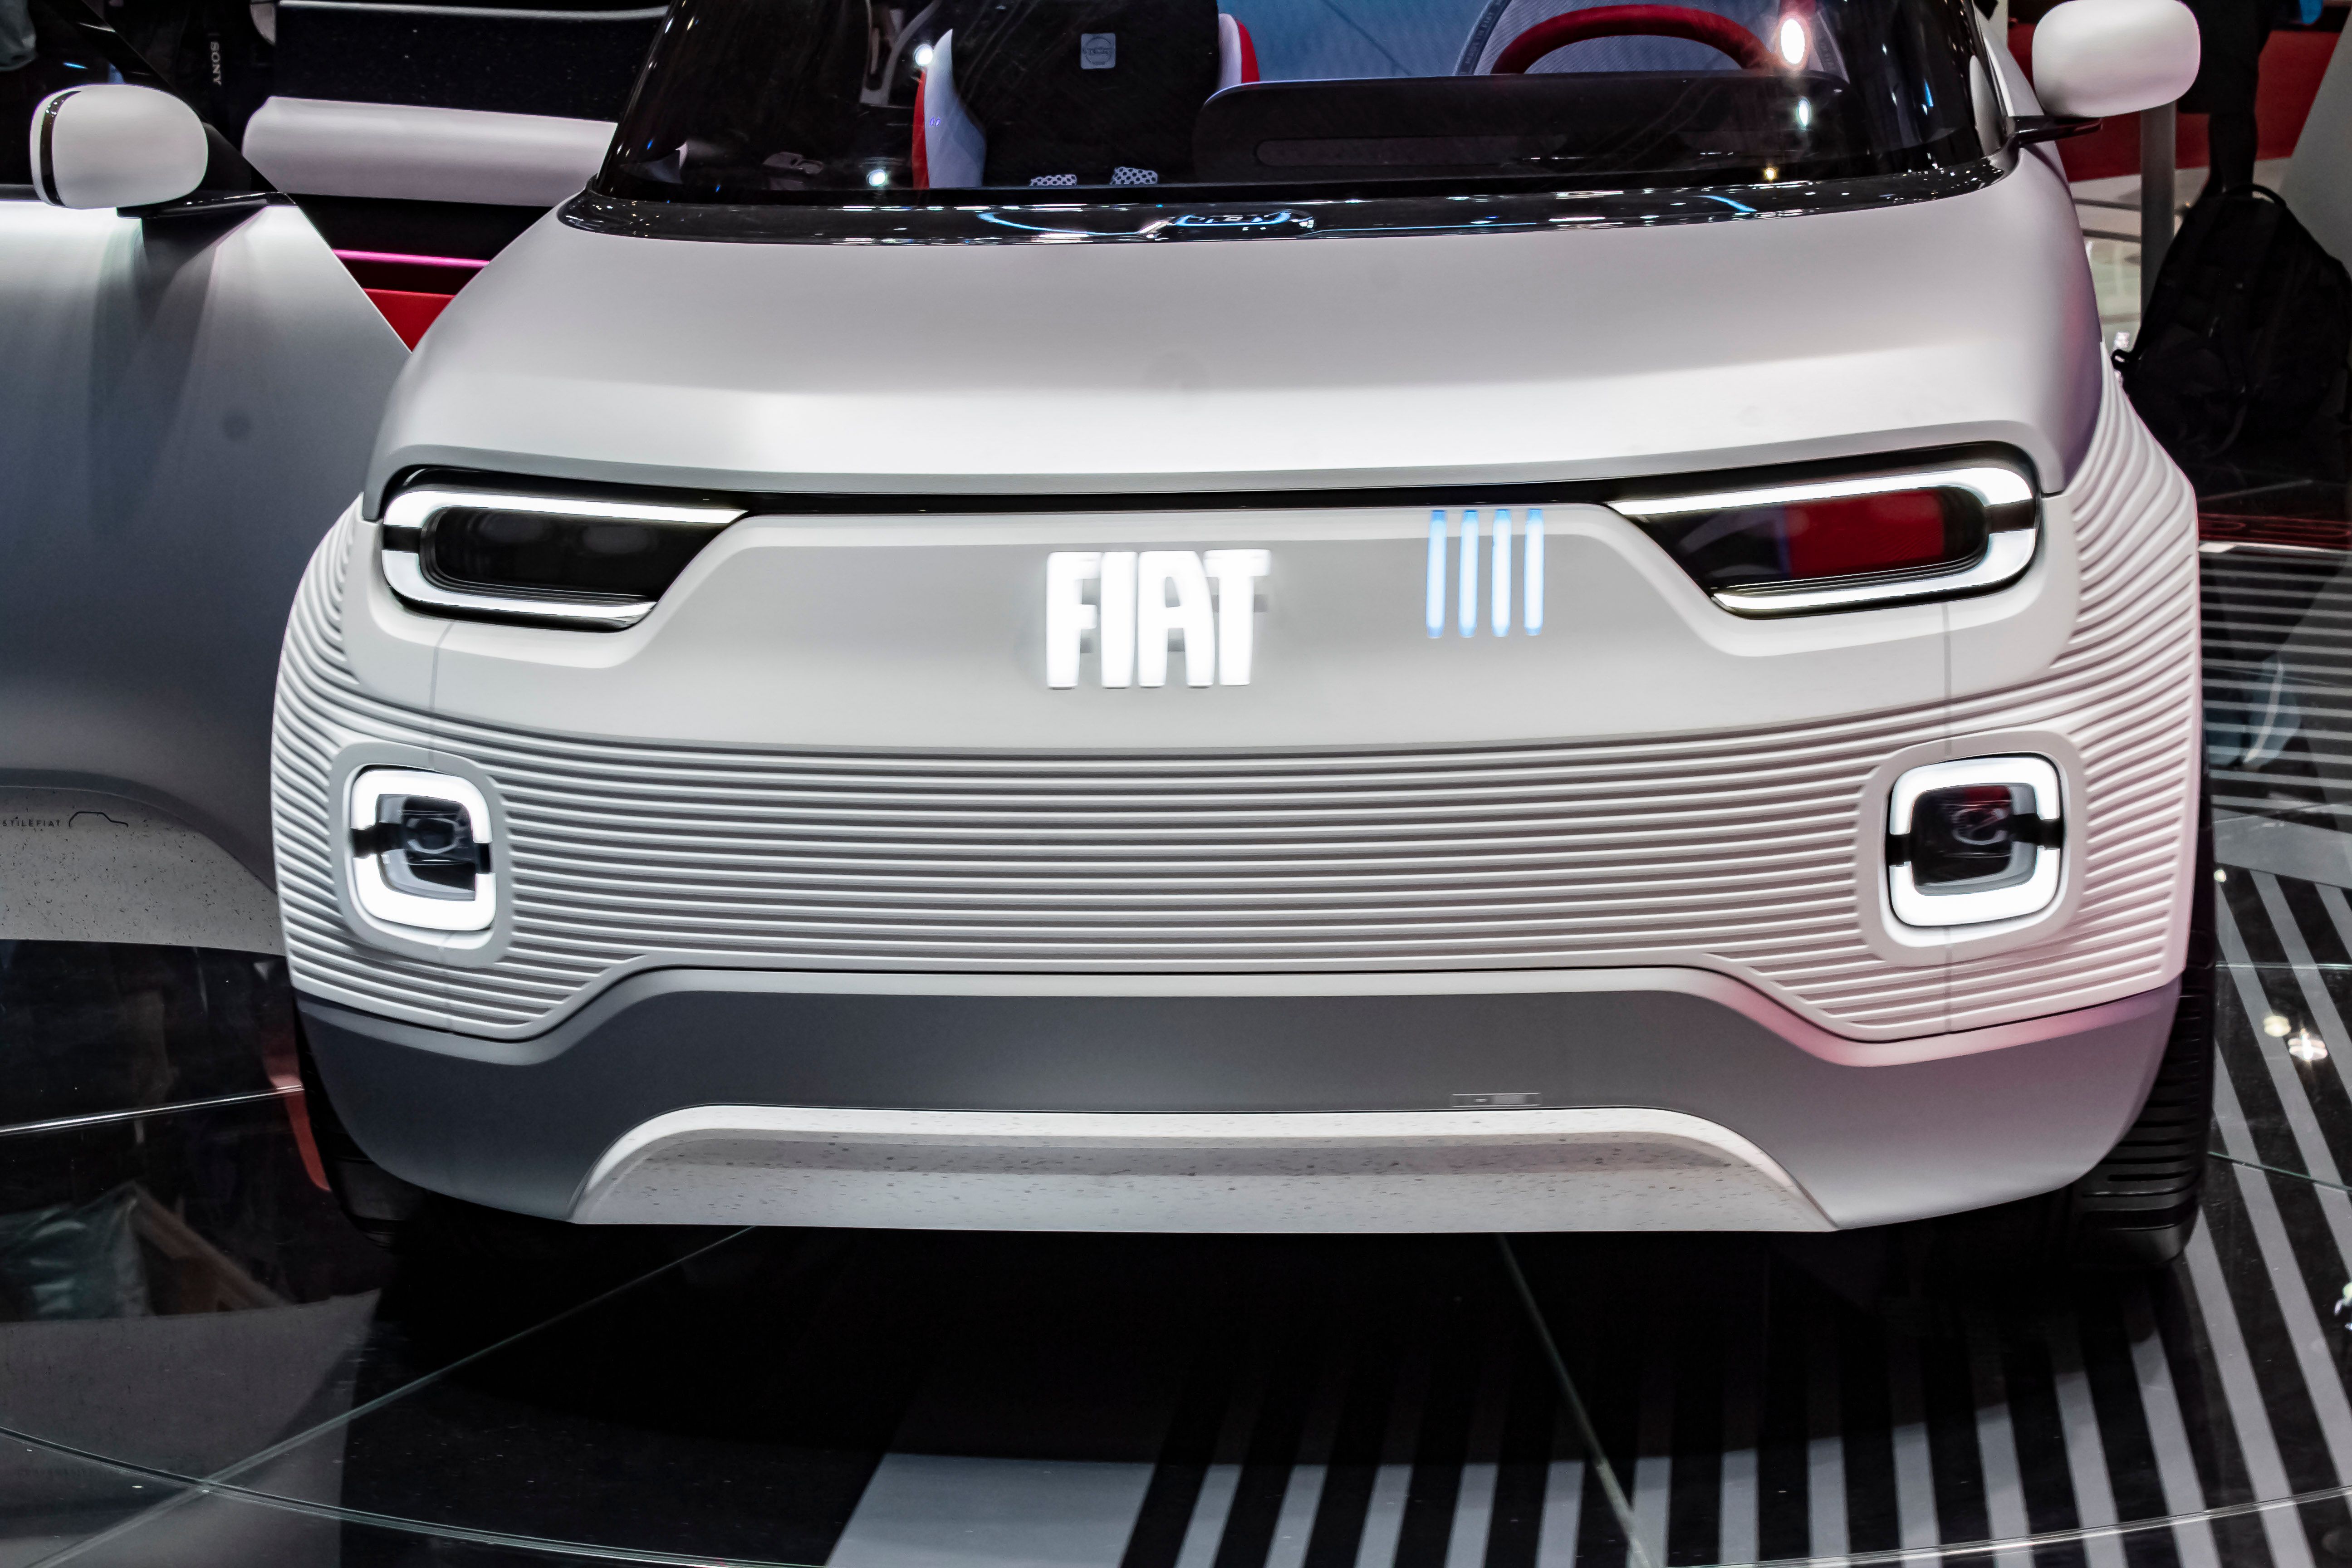 2019 Fiat Centoventi Concept